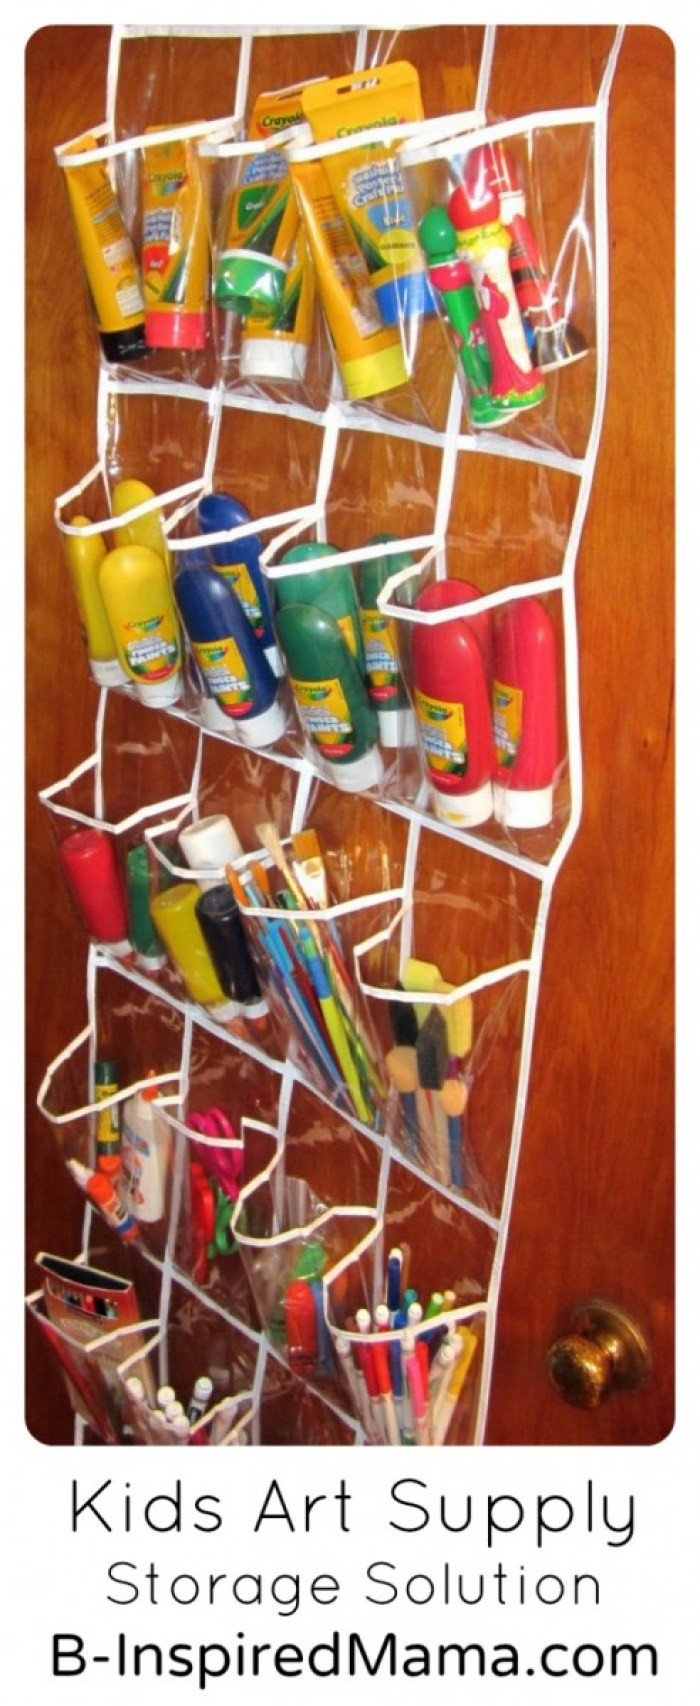 Kids Art Supply Storage
 Keeps Kids Art Supplies Handy and Organized